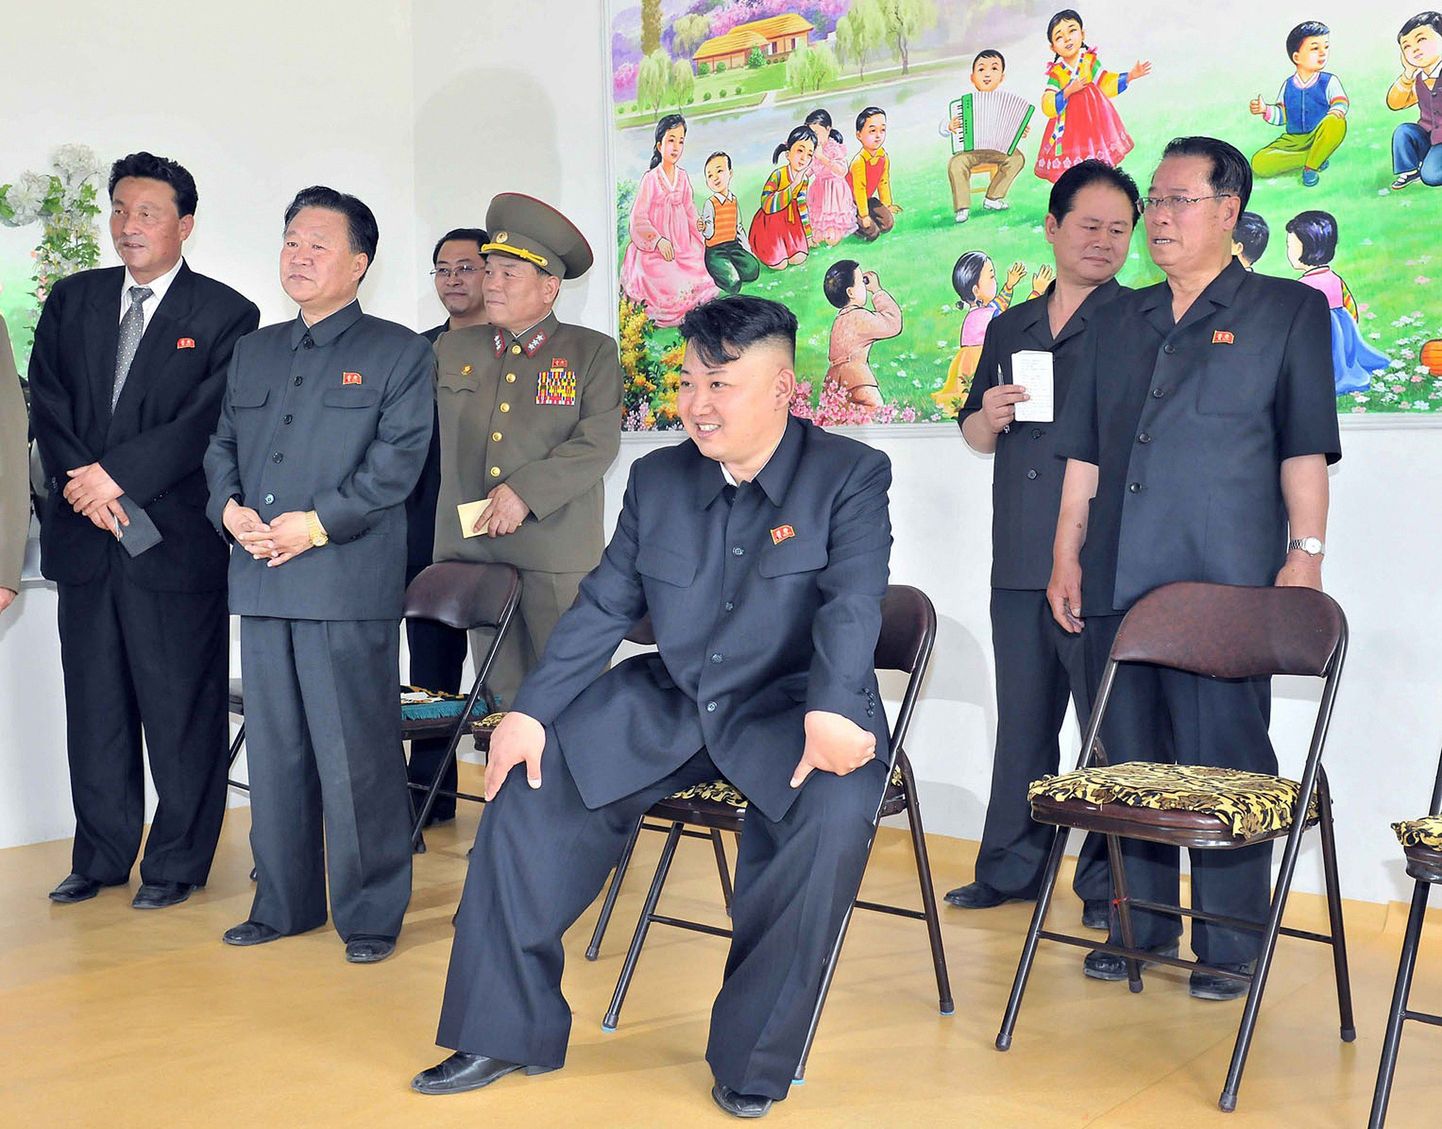 Põhja-Korea diktaator Kim Jong-un (istub) külastas lasteaeda.